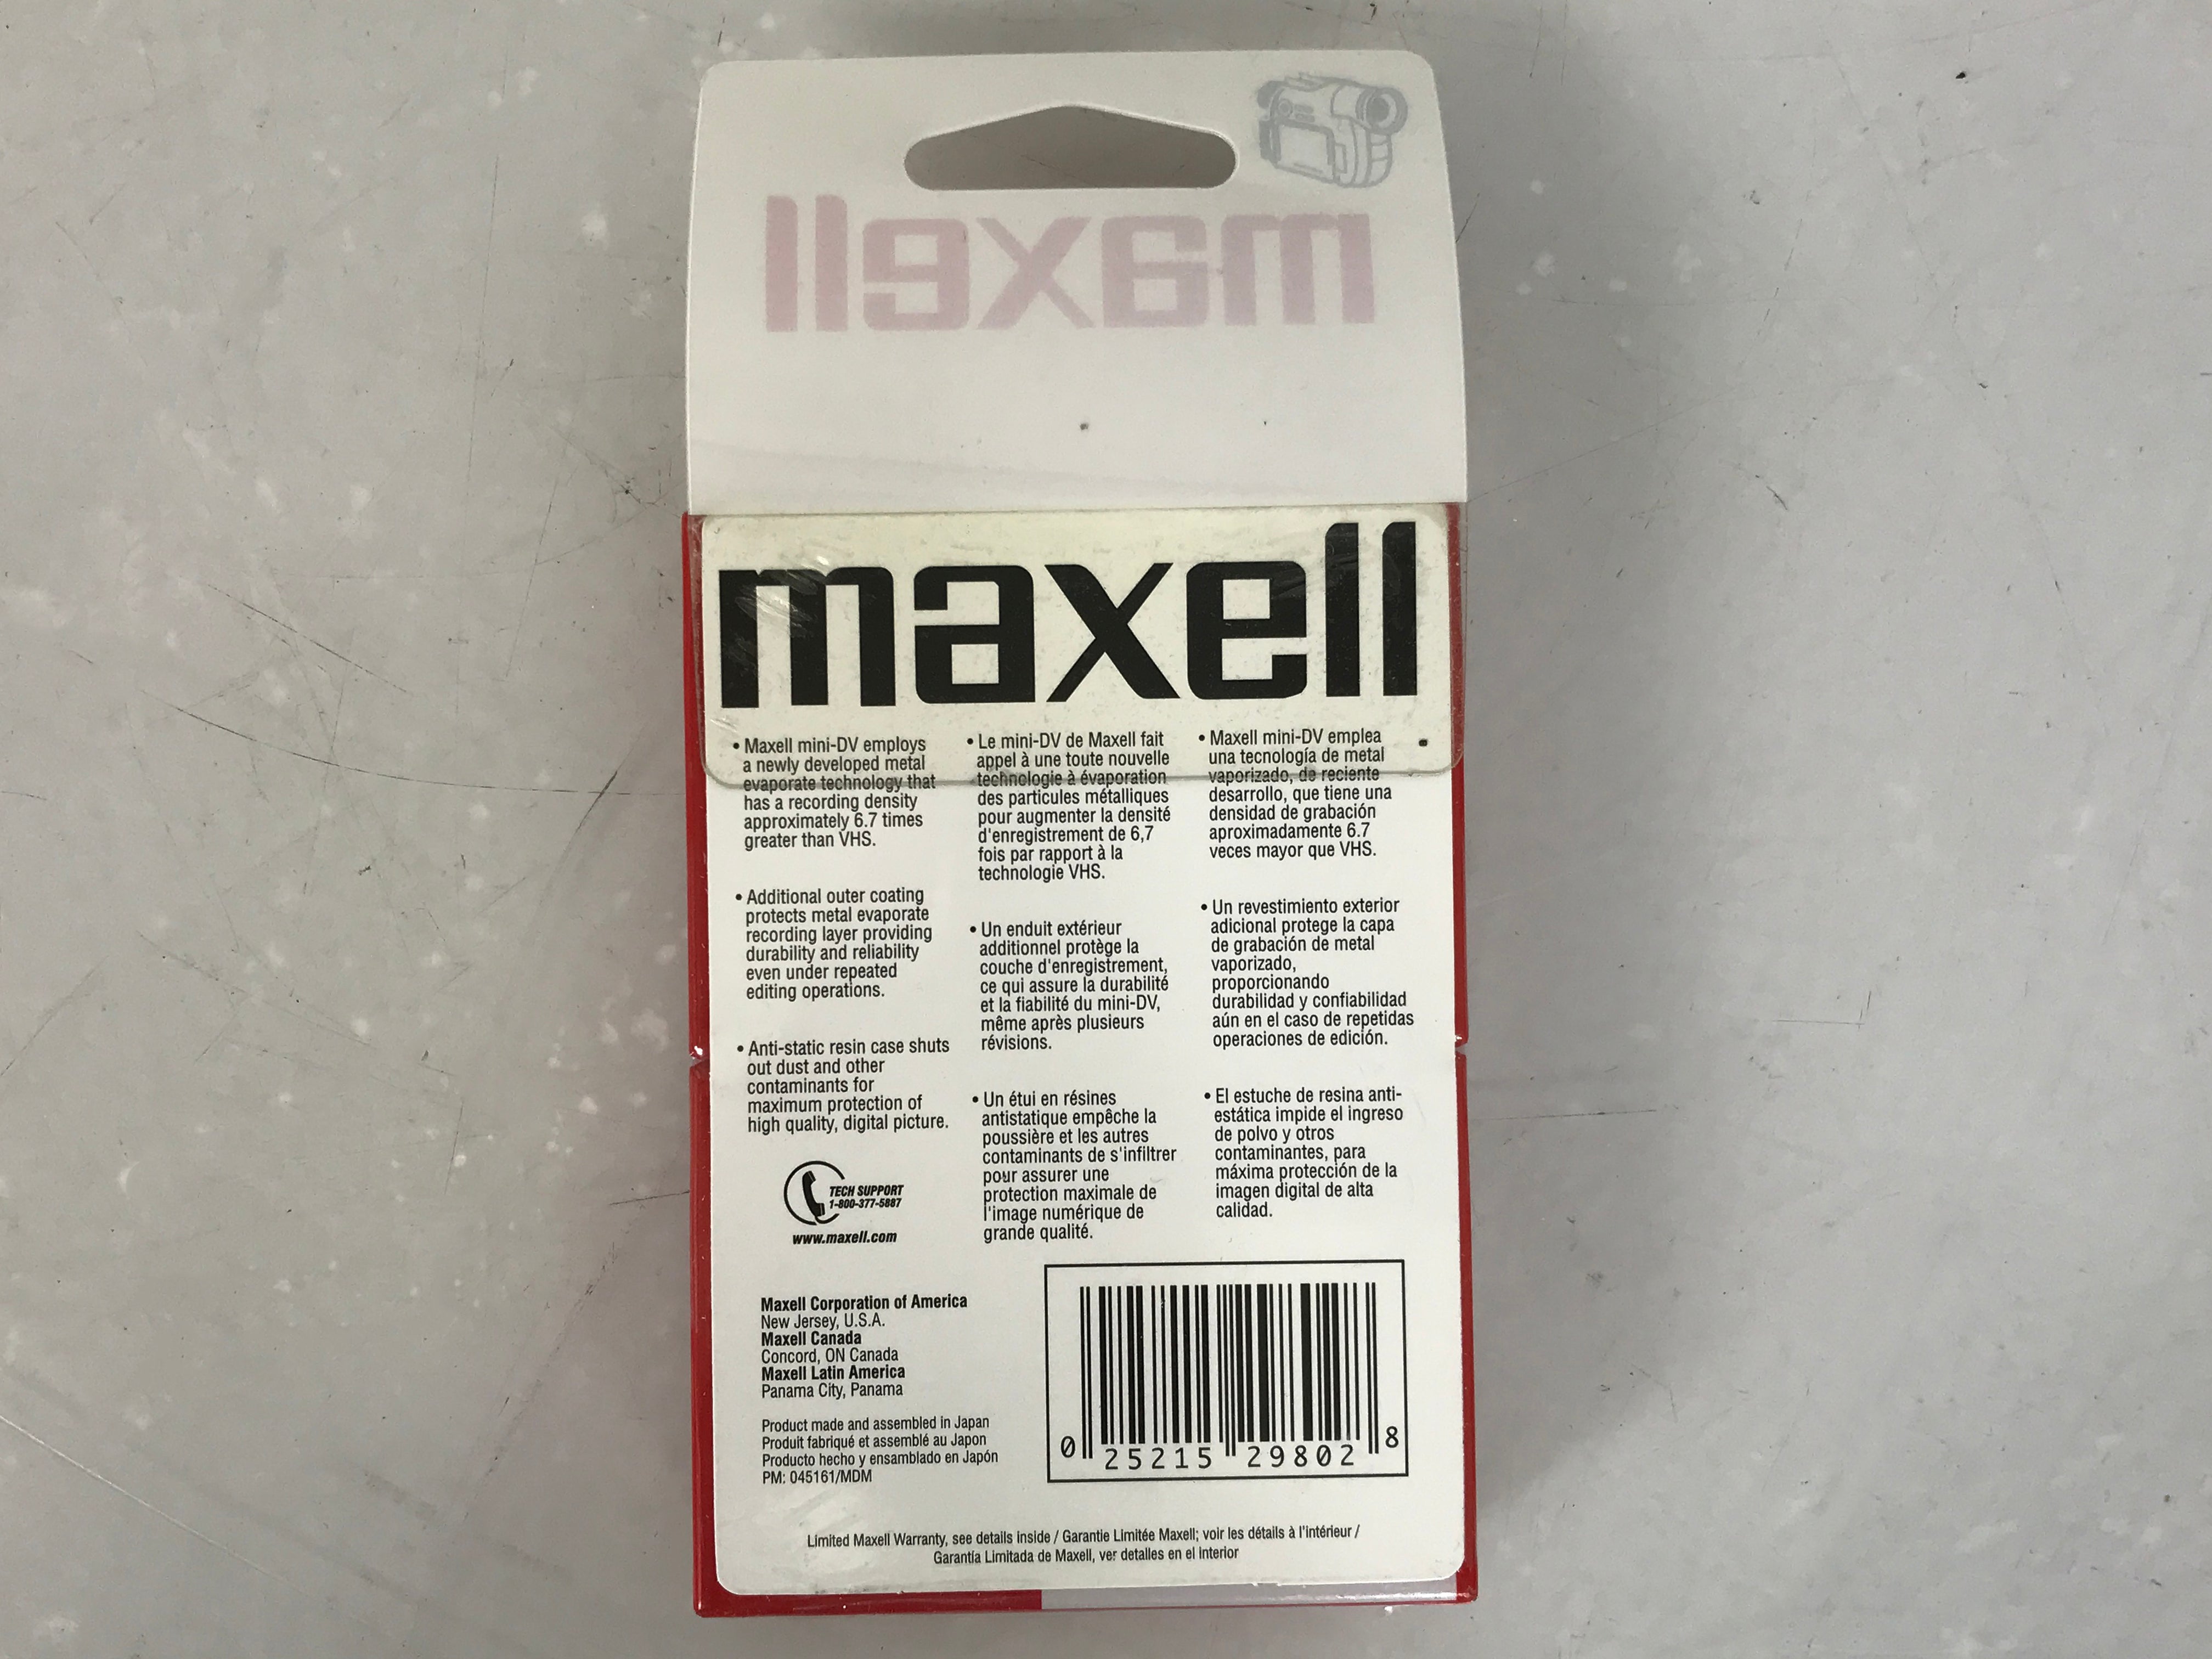 Maxell XL II 60 Video Cassette – MSU Surplus Store